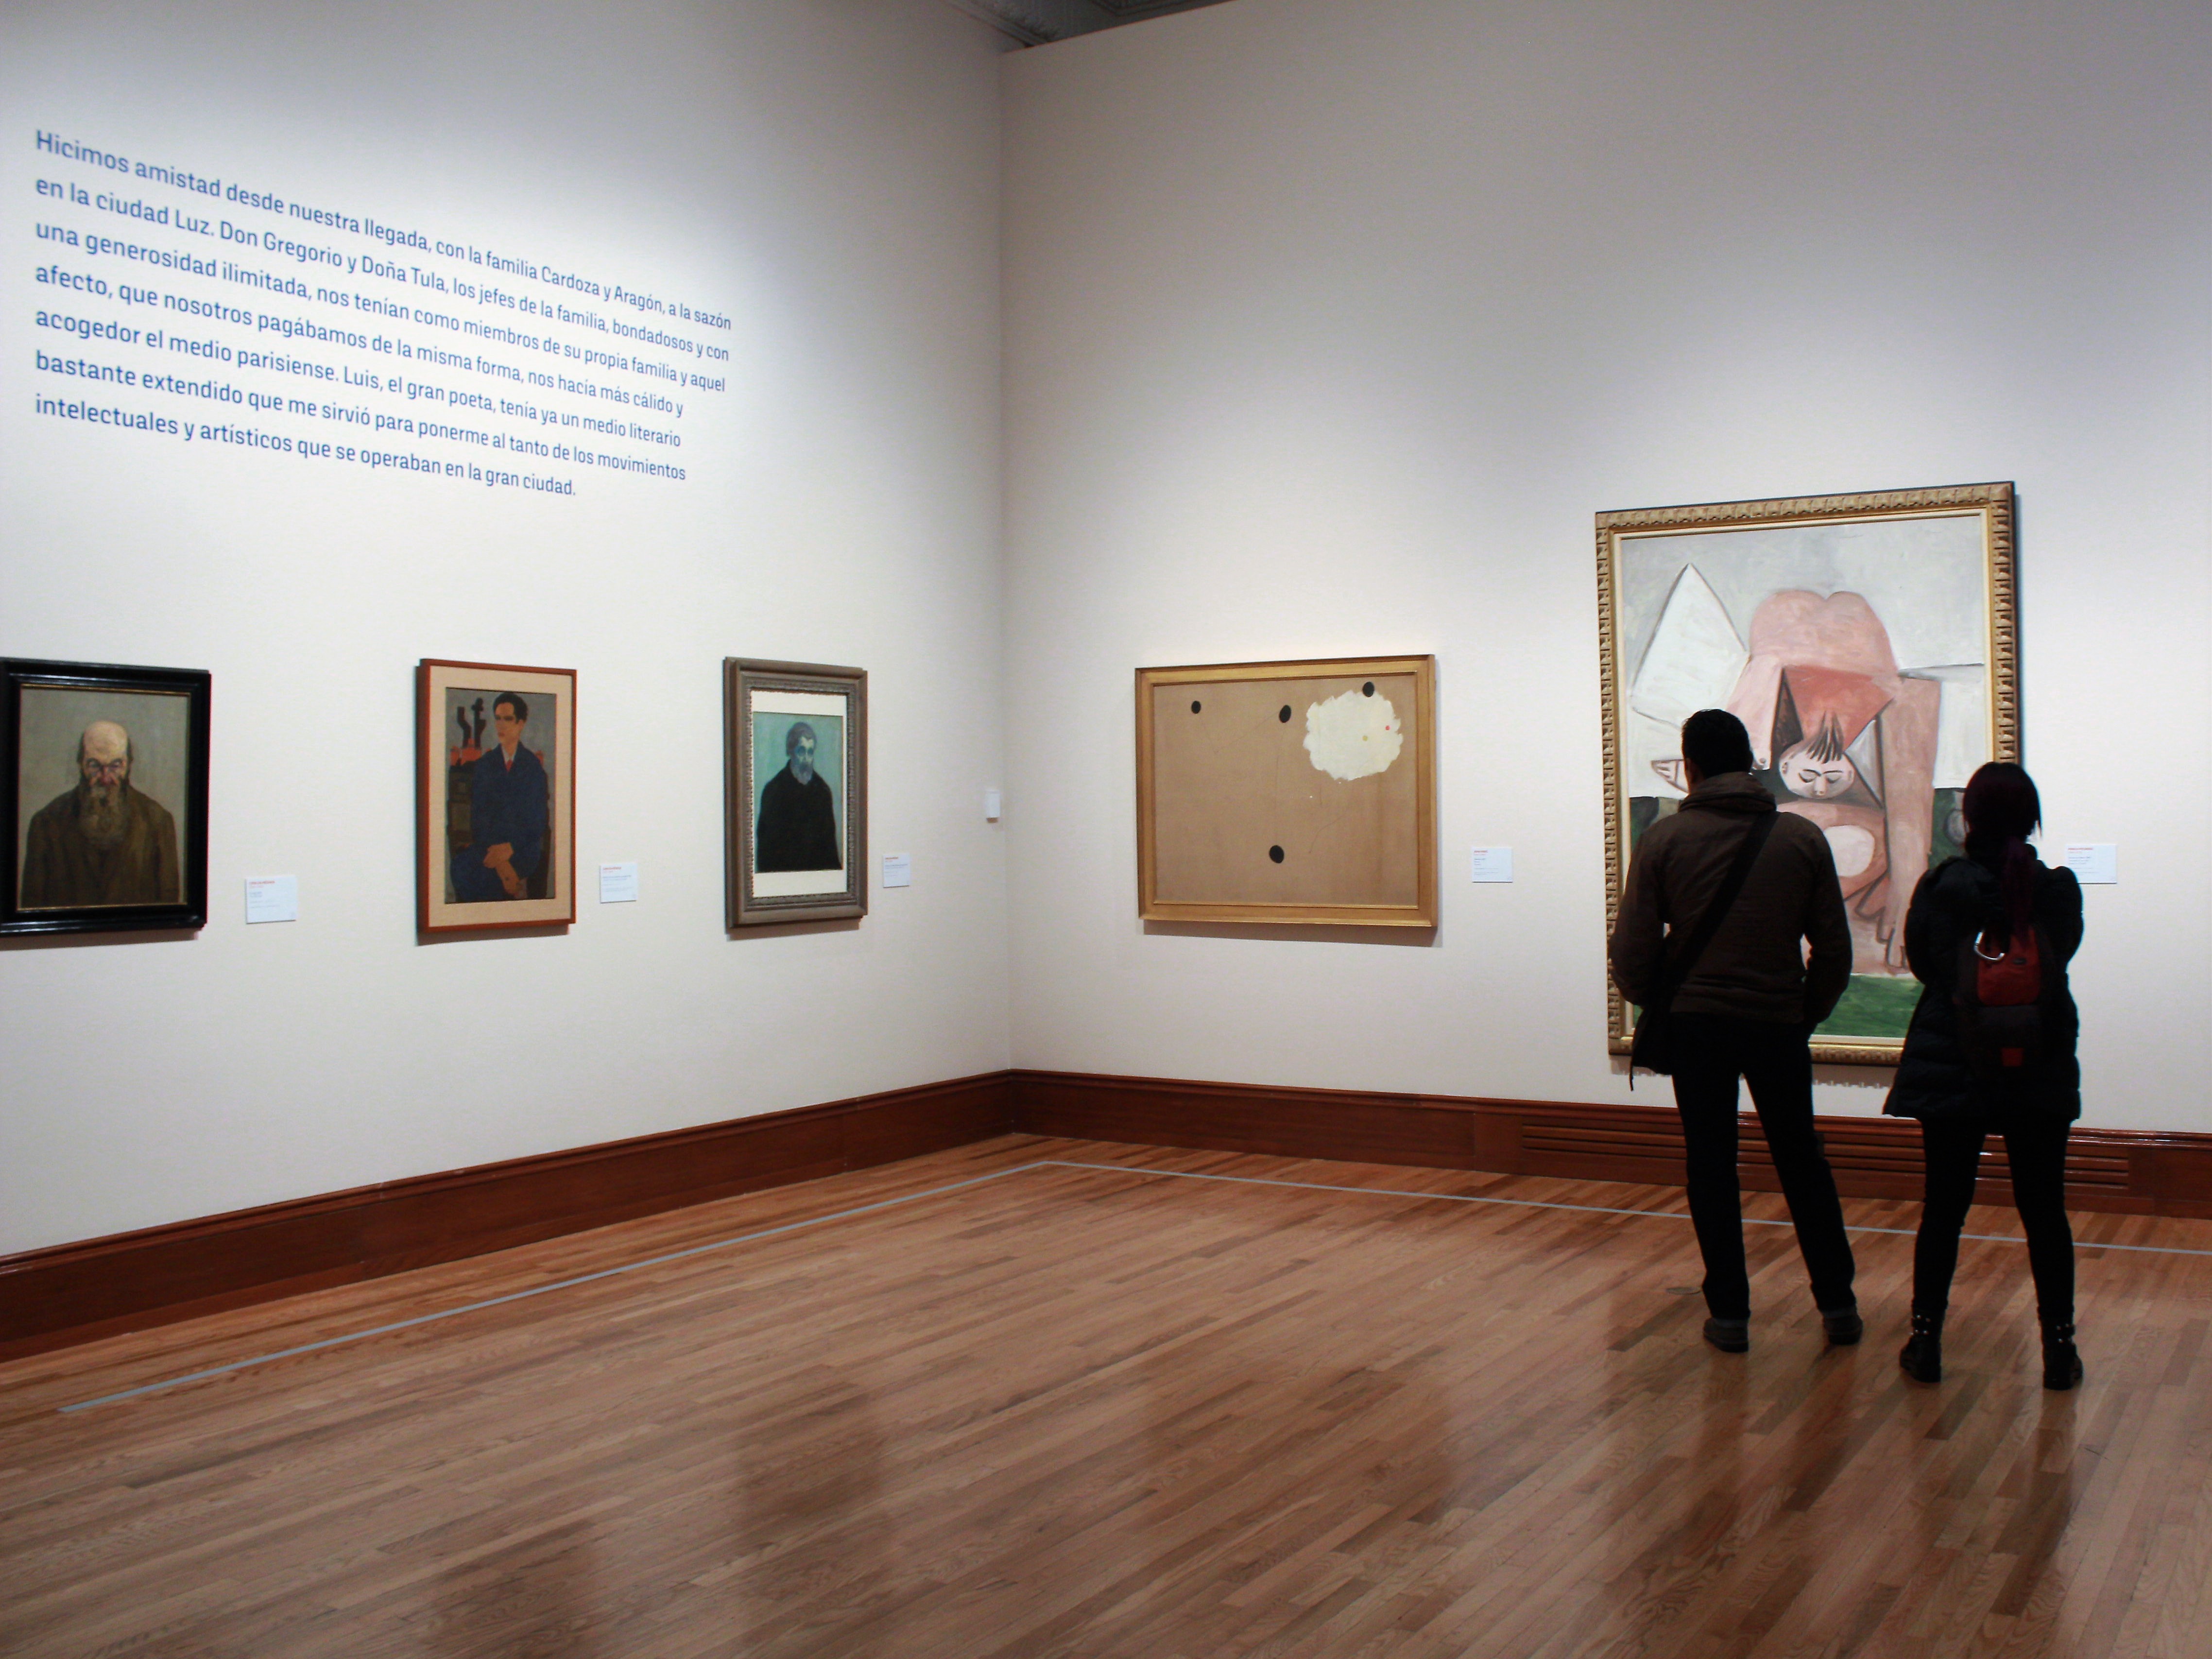 El Museo Nacional de Arte presenta magna exposición sobre el artista Carlos Mérida